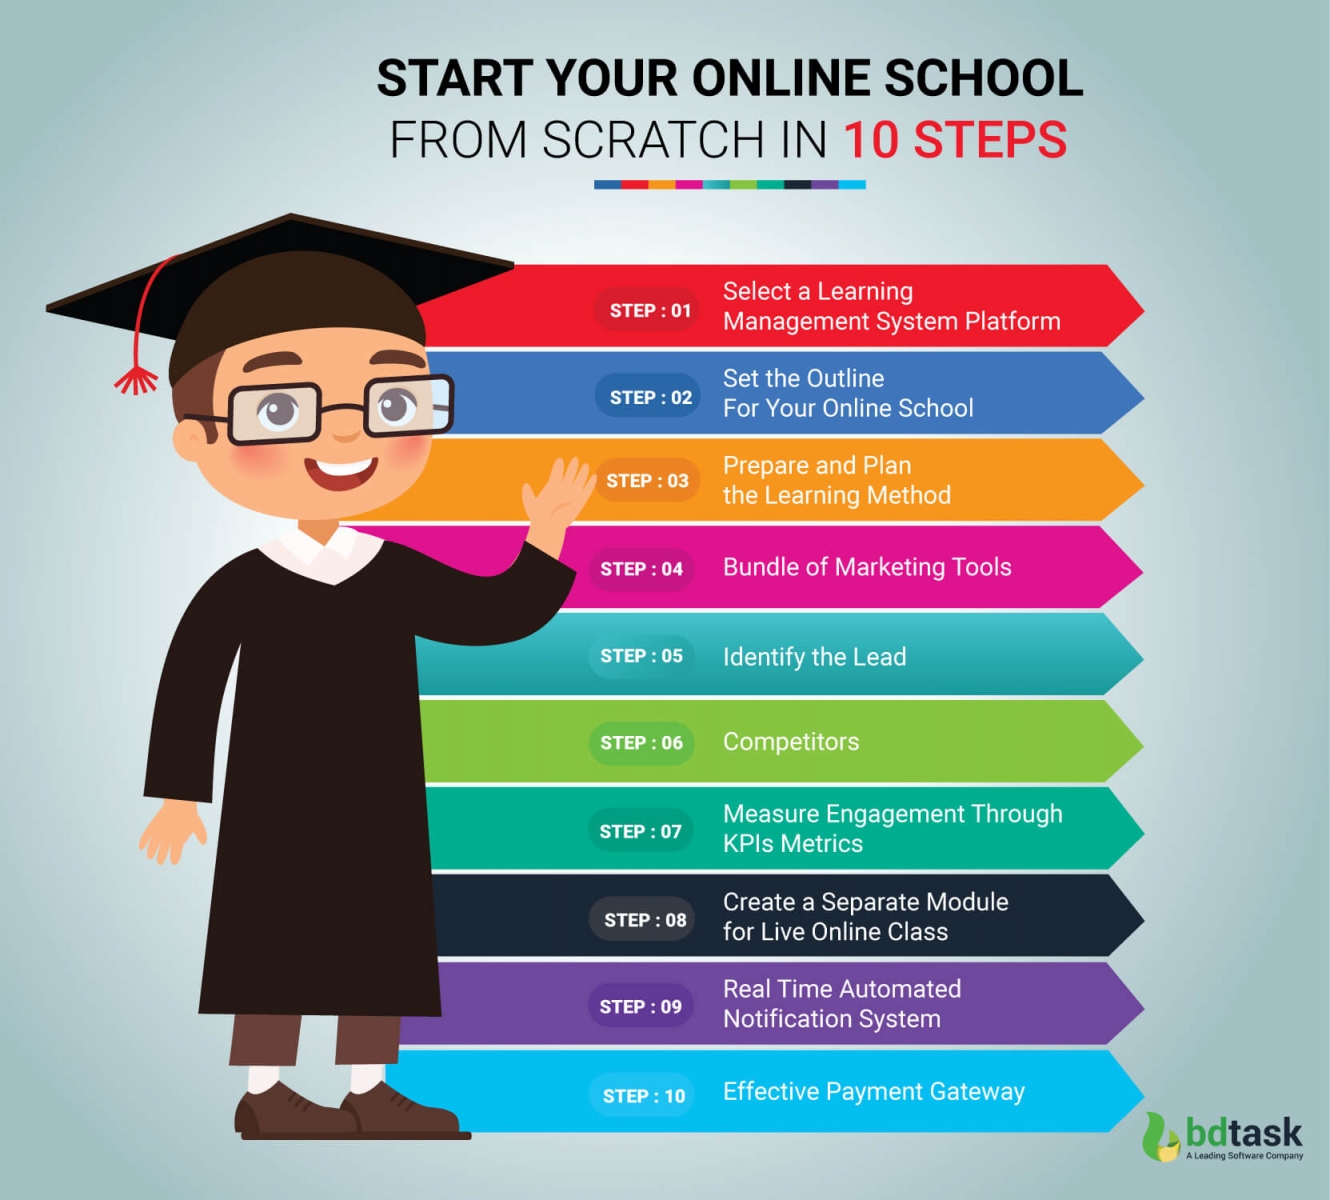 Start Your Online School